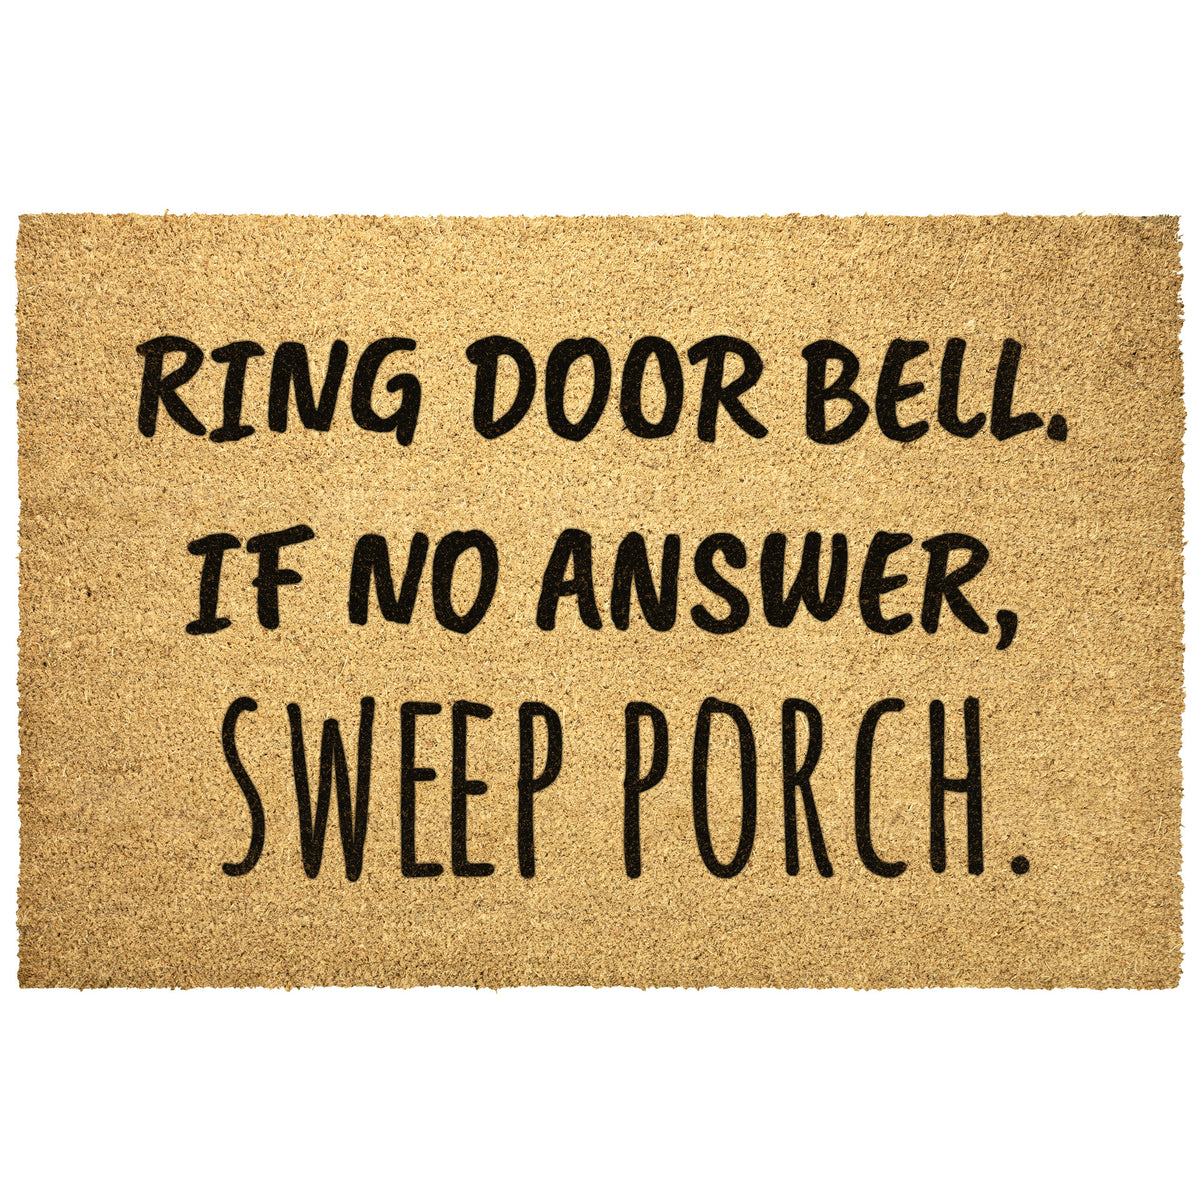 Ring Door Bell Sweep Porch Doormat